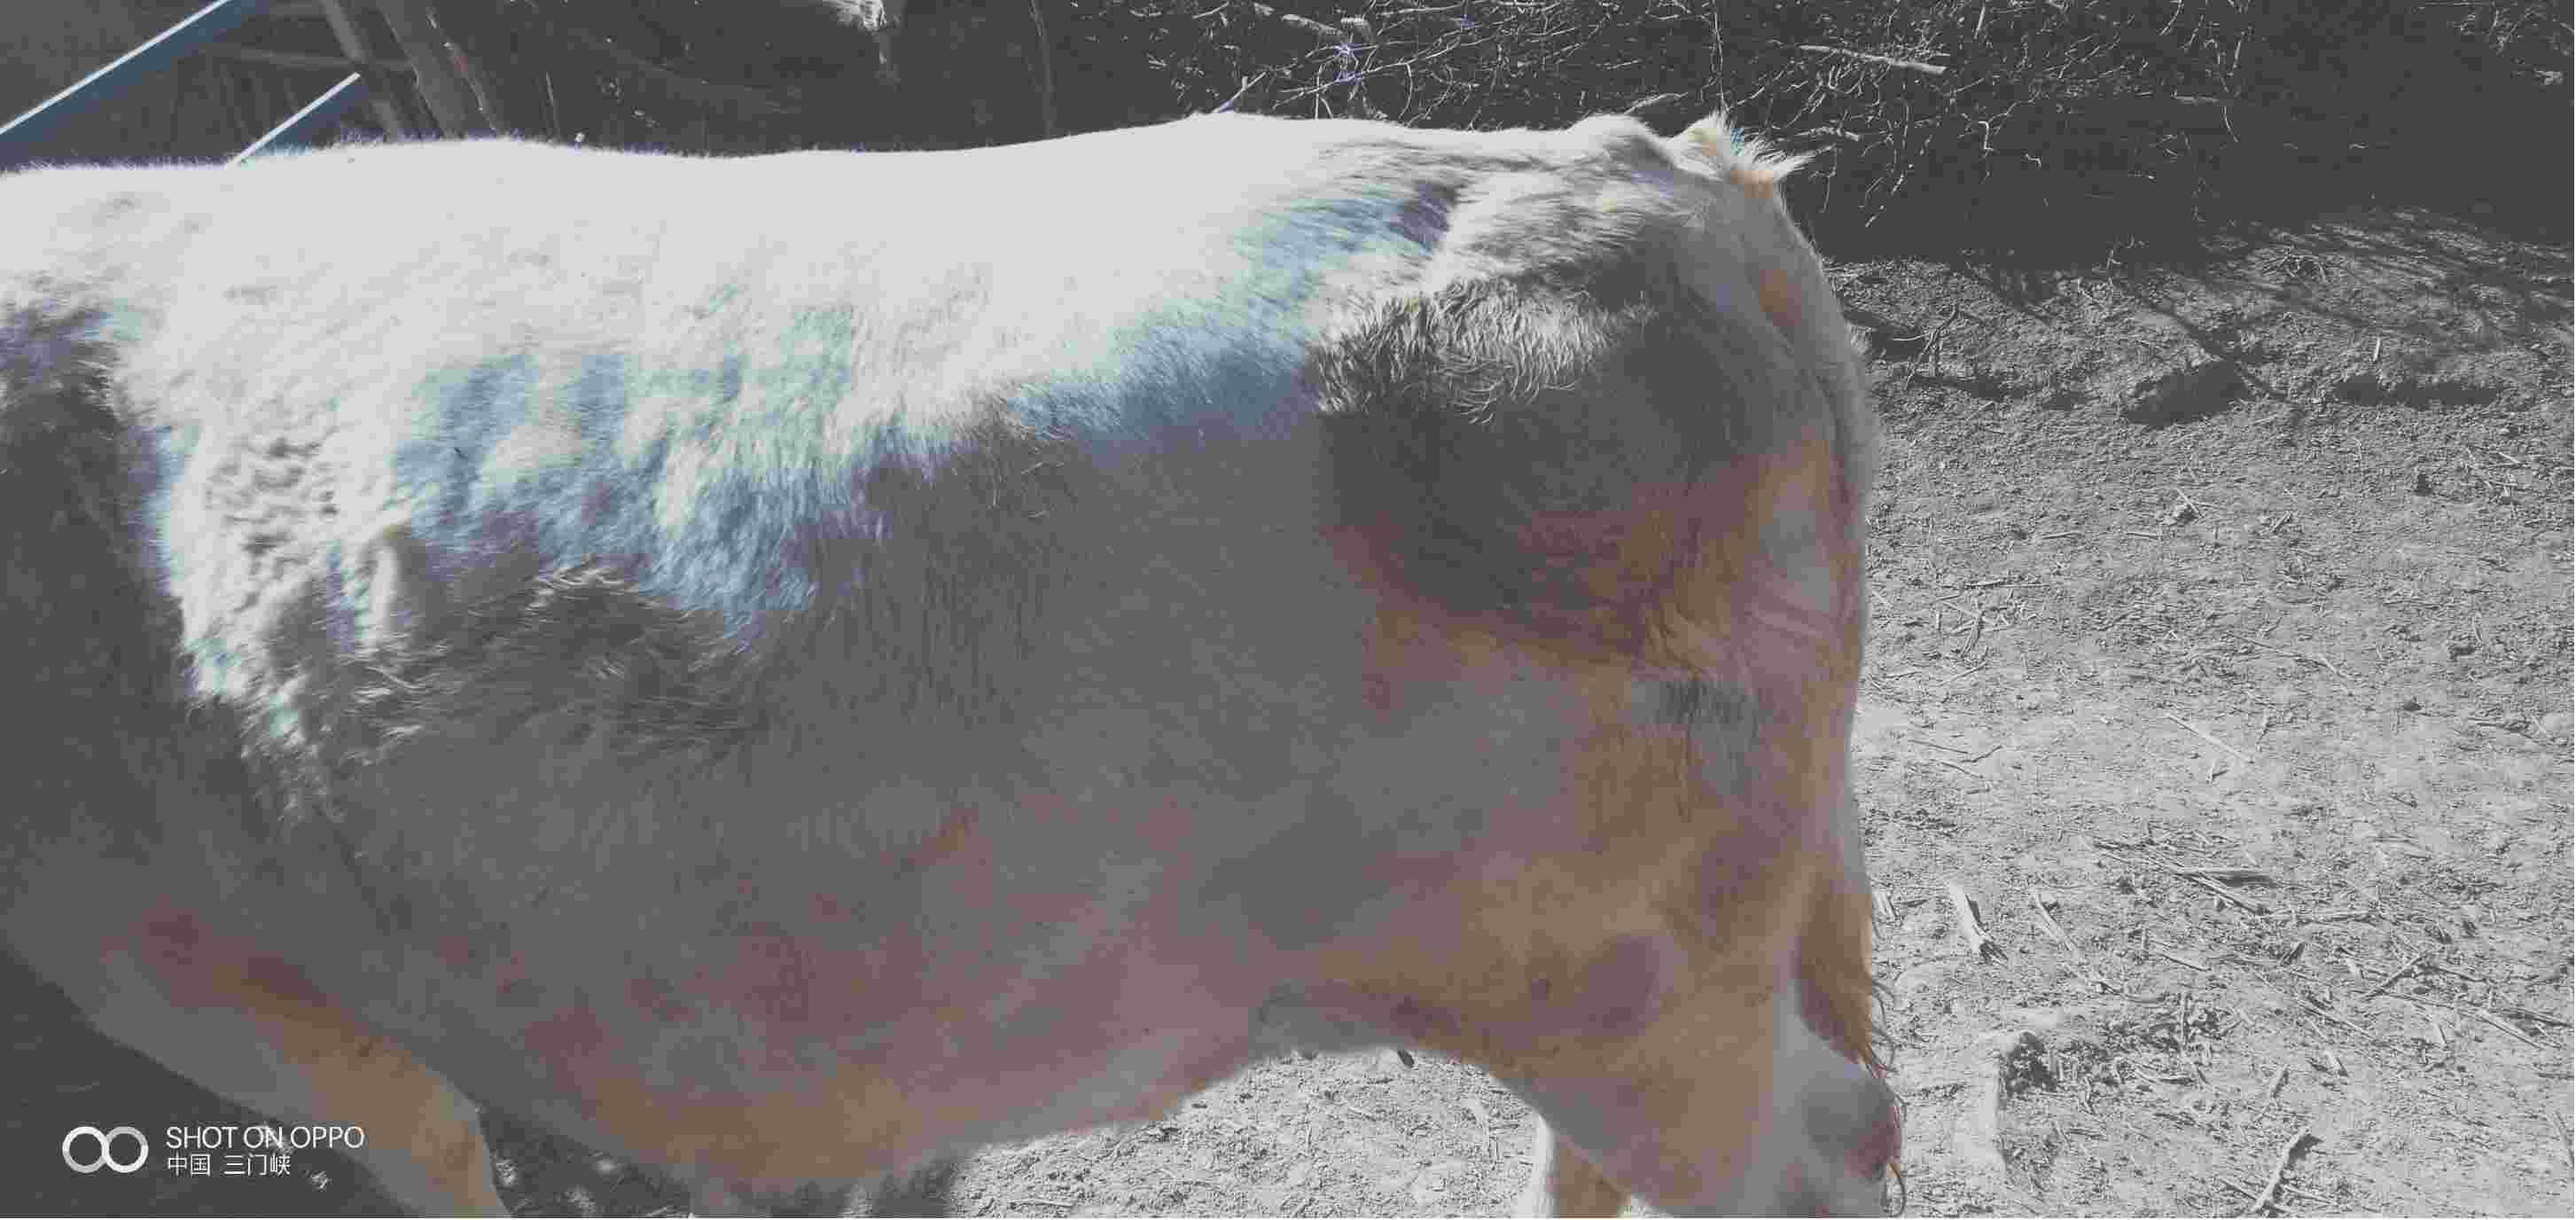 牛放线菌症状高清图片图片